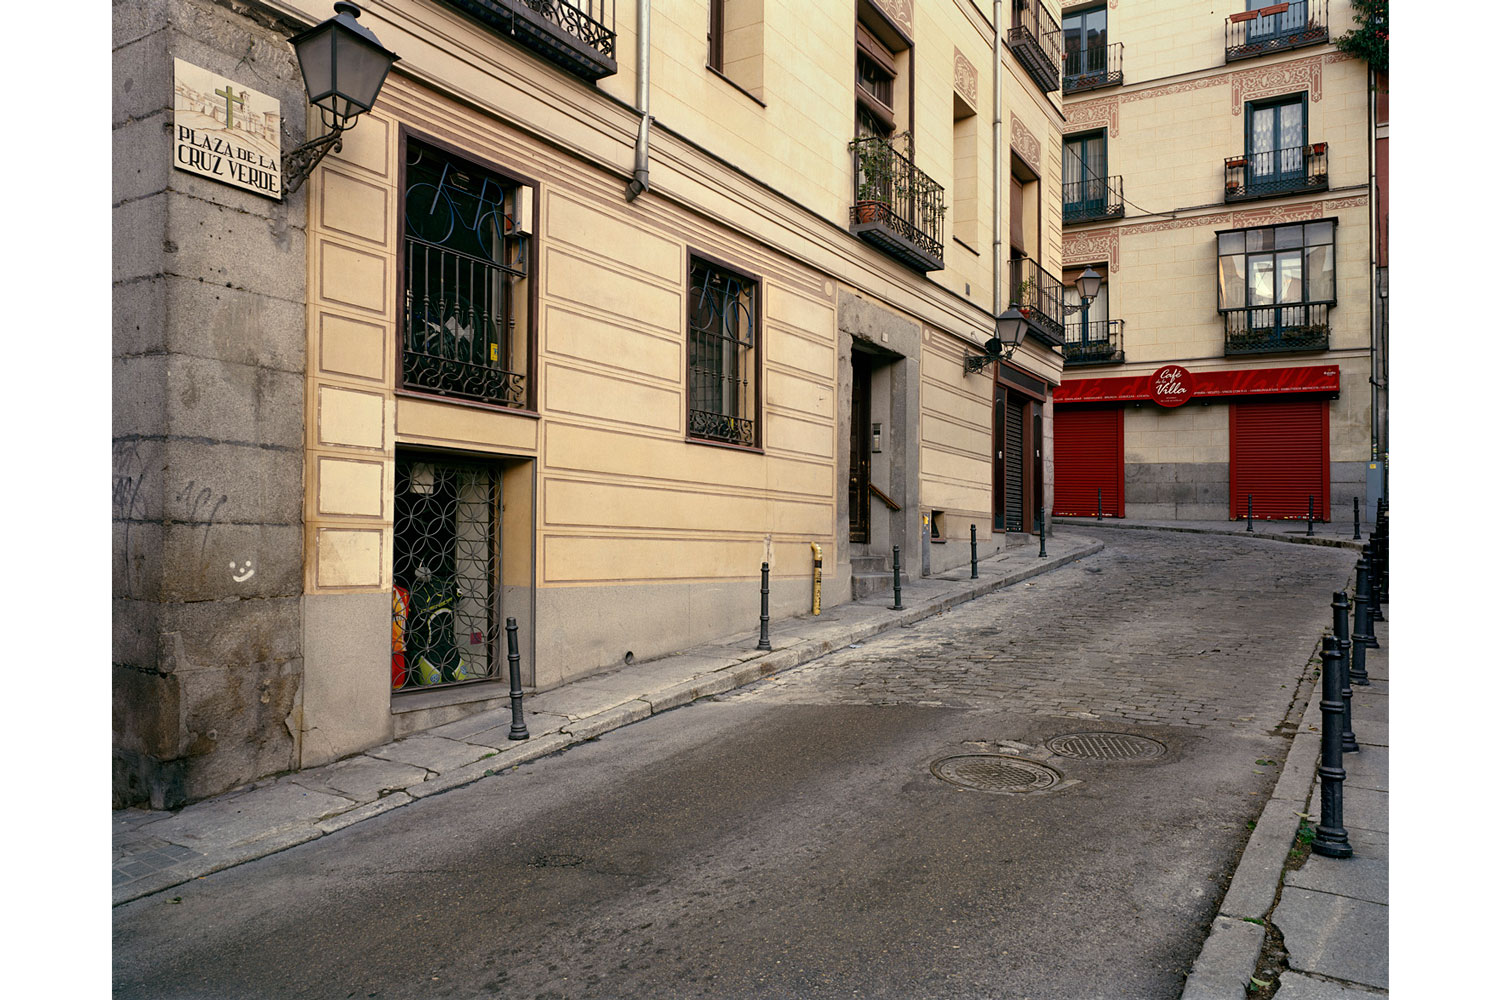 Atentado de ETA del  6 de febrero de 1992 en Plaza de la Cruz Verde de Madrid